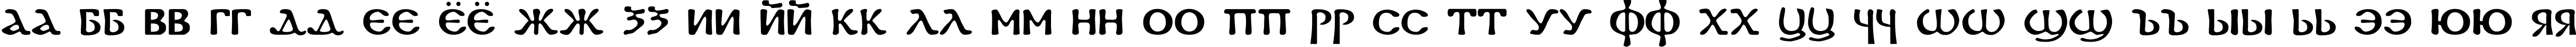 Пример написания русского алфавита шрифтом DS Coptic